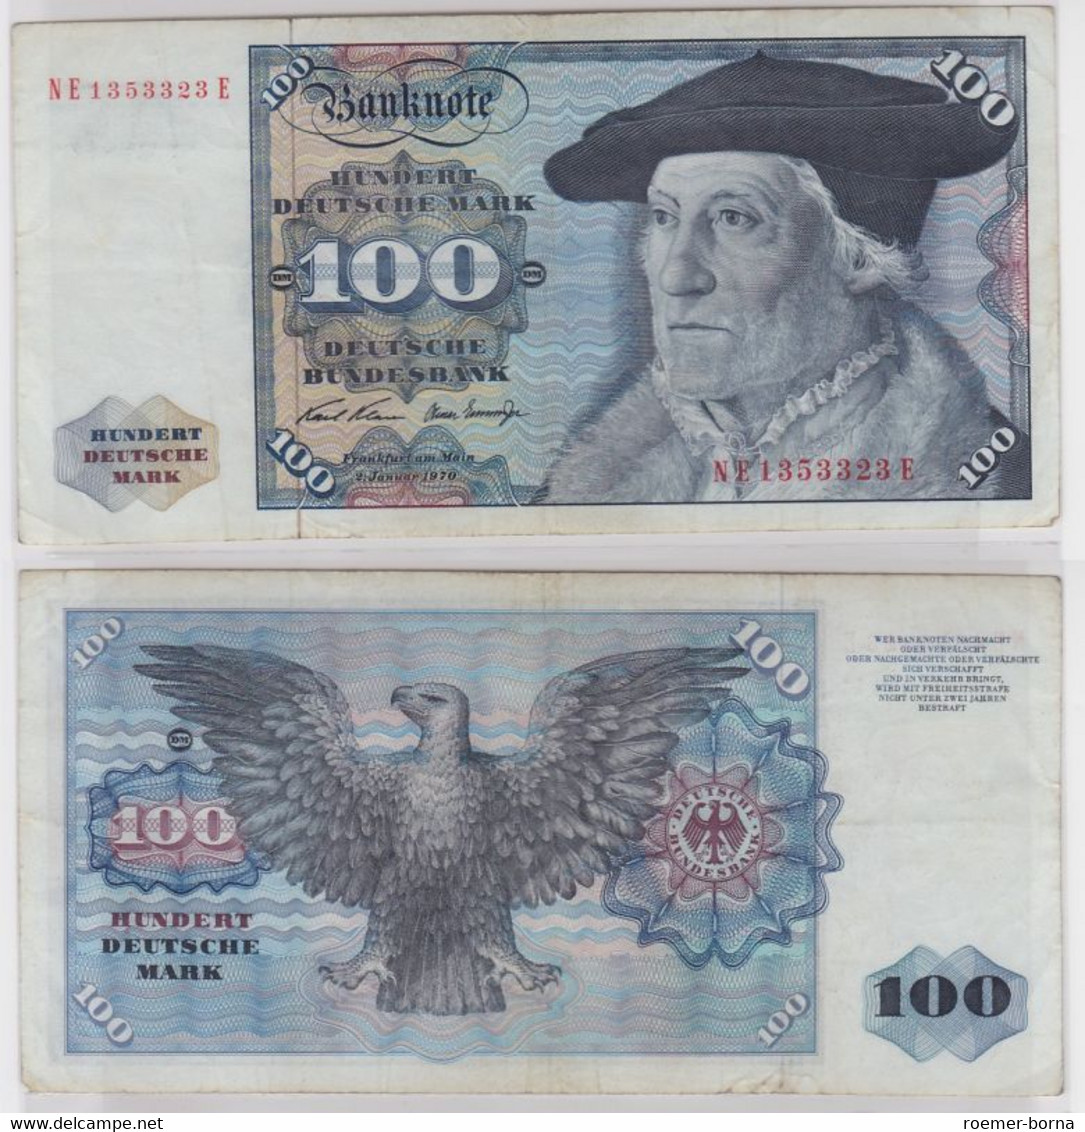 T146504 Banknote 100 DM Deutsche Mark Ro. 273b Schein 2.Jan 1970 KN NE 1353323 E - 100 DM